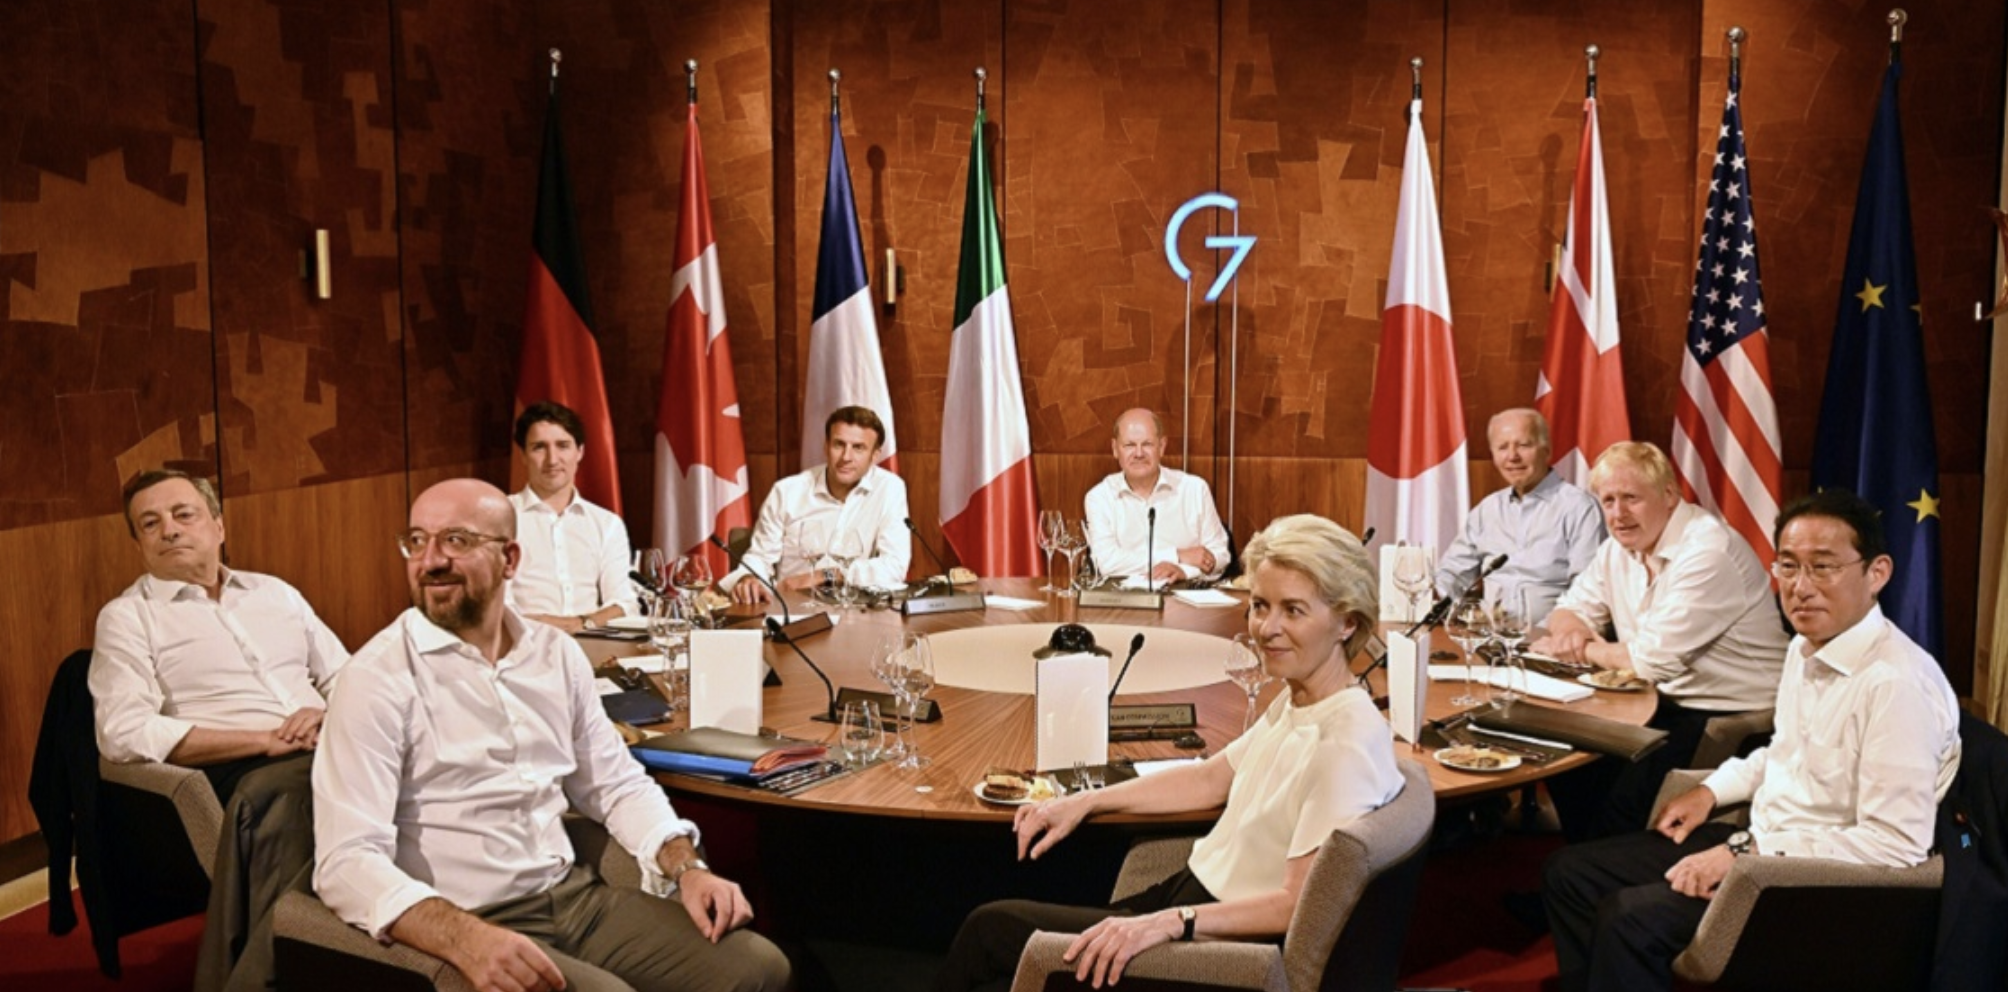 «Нужно продемонстрировать голые торсы» — лидеры G7 вспомнили на саммите фото Путина верхом на лошади с голым торсом